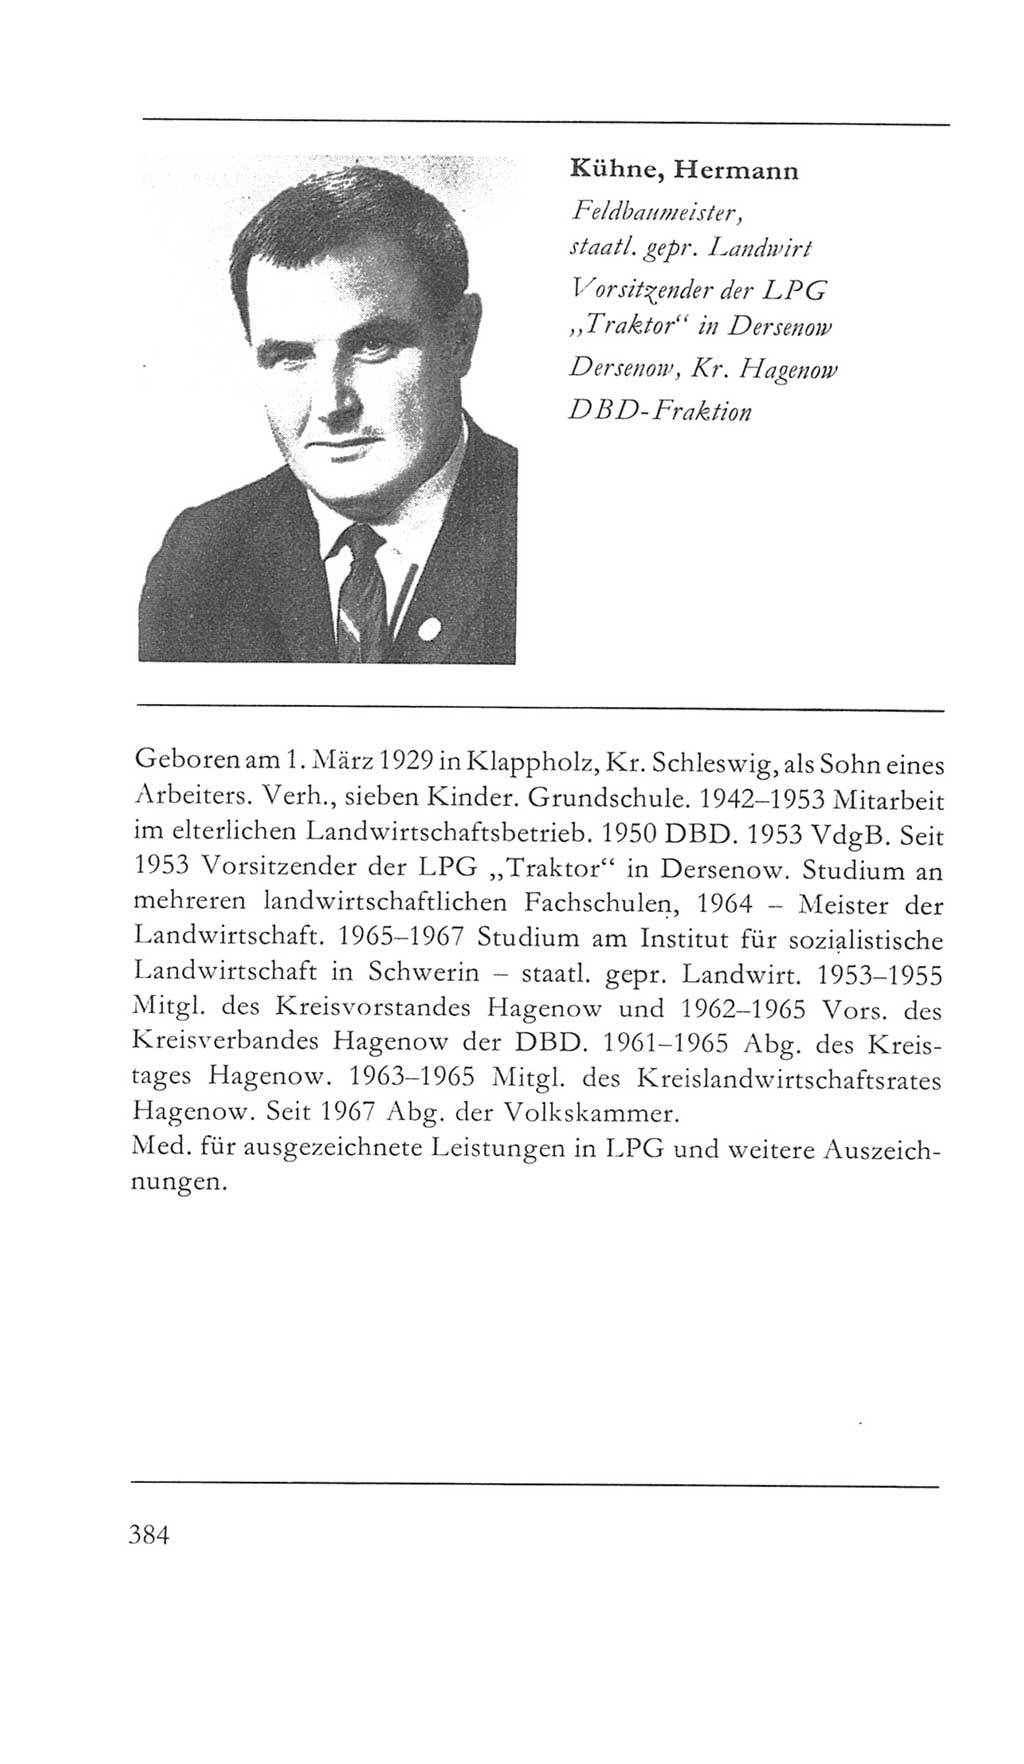 Volkskammer (VK) der Deutschen Demokratischen Republik (DDR) 5. Wahlperiode 1967-1971, Seite 384 (VK. DDR 5. WP. 1967-1971, S. 384)